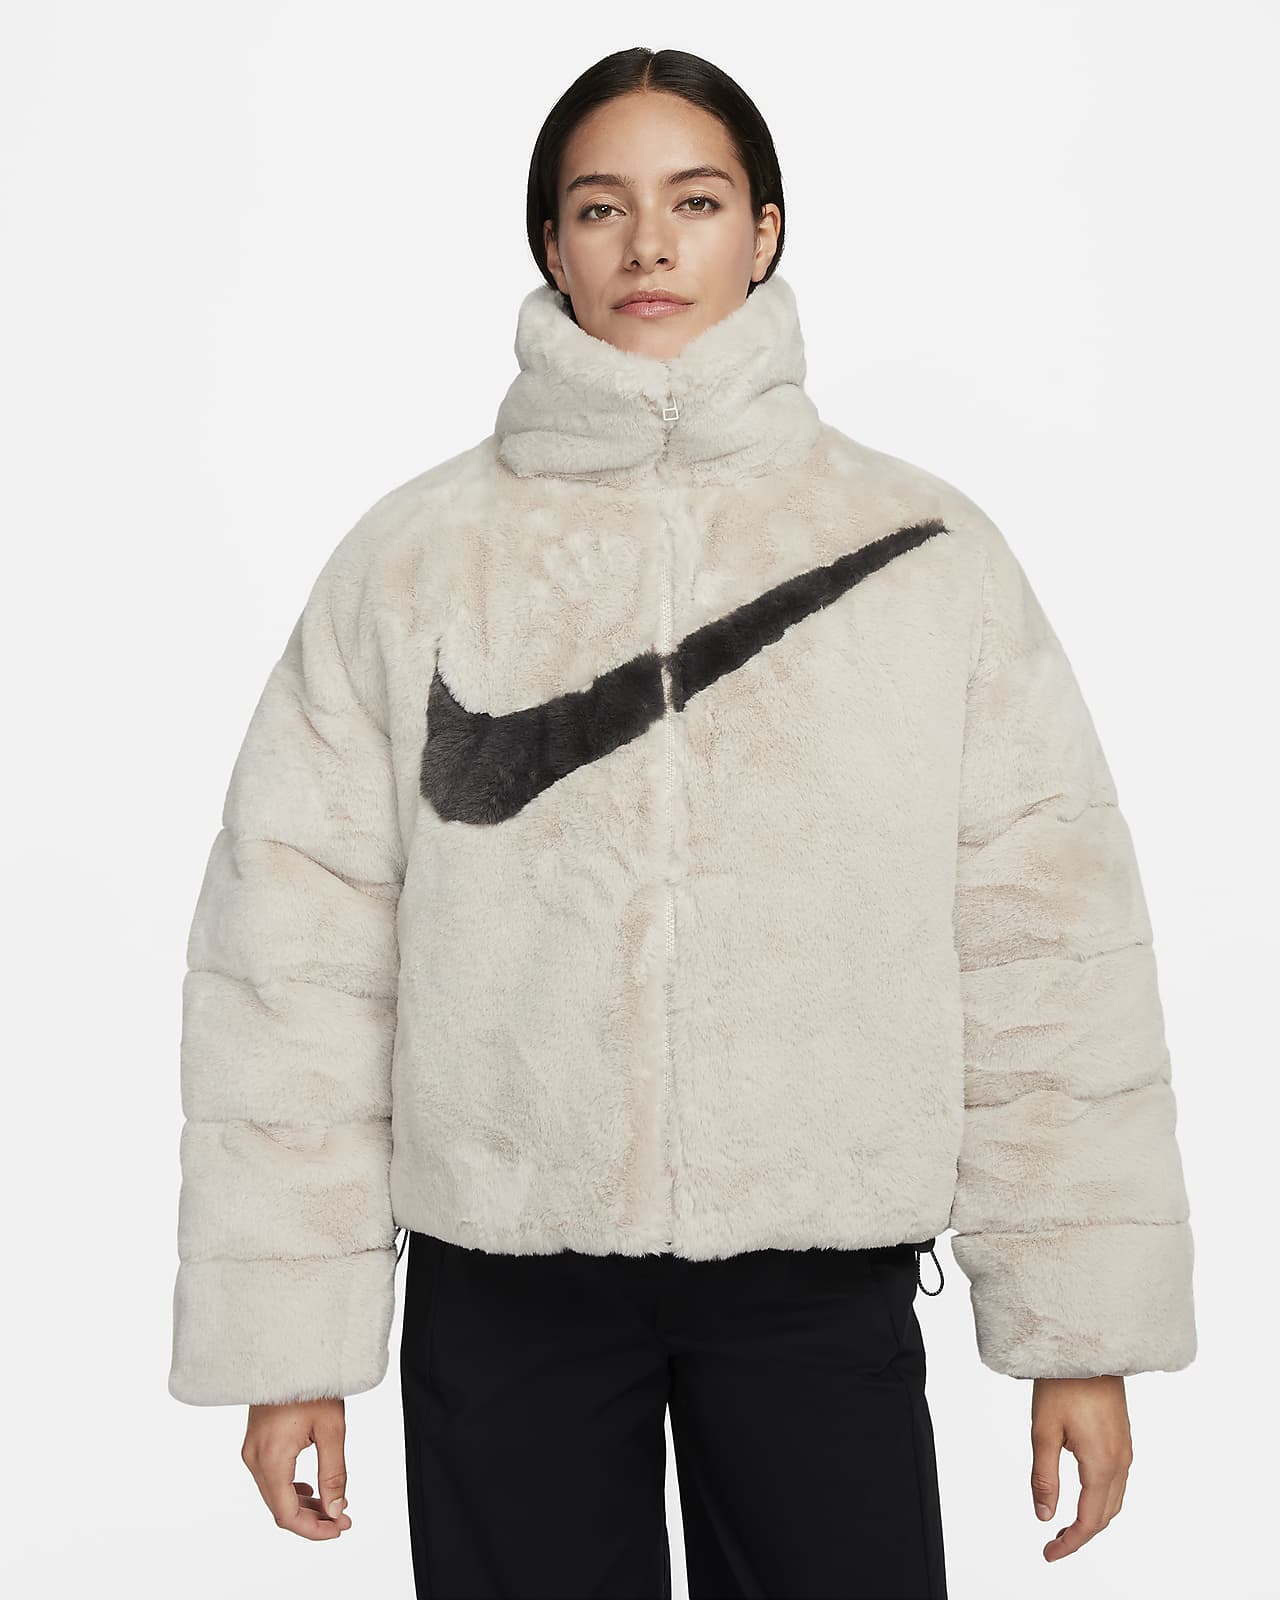 Nike Sportswear Women's Faux Fur Long Jacket.